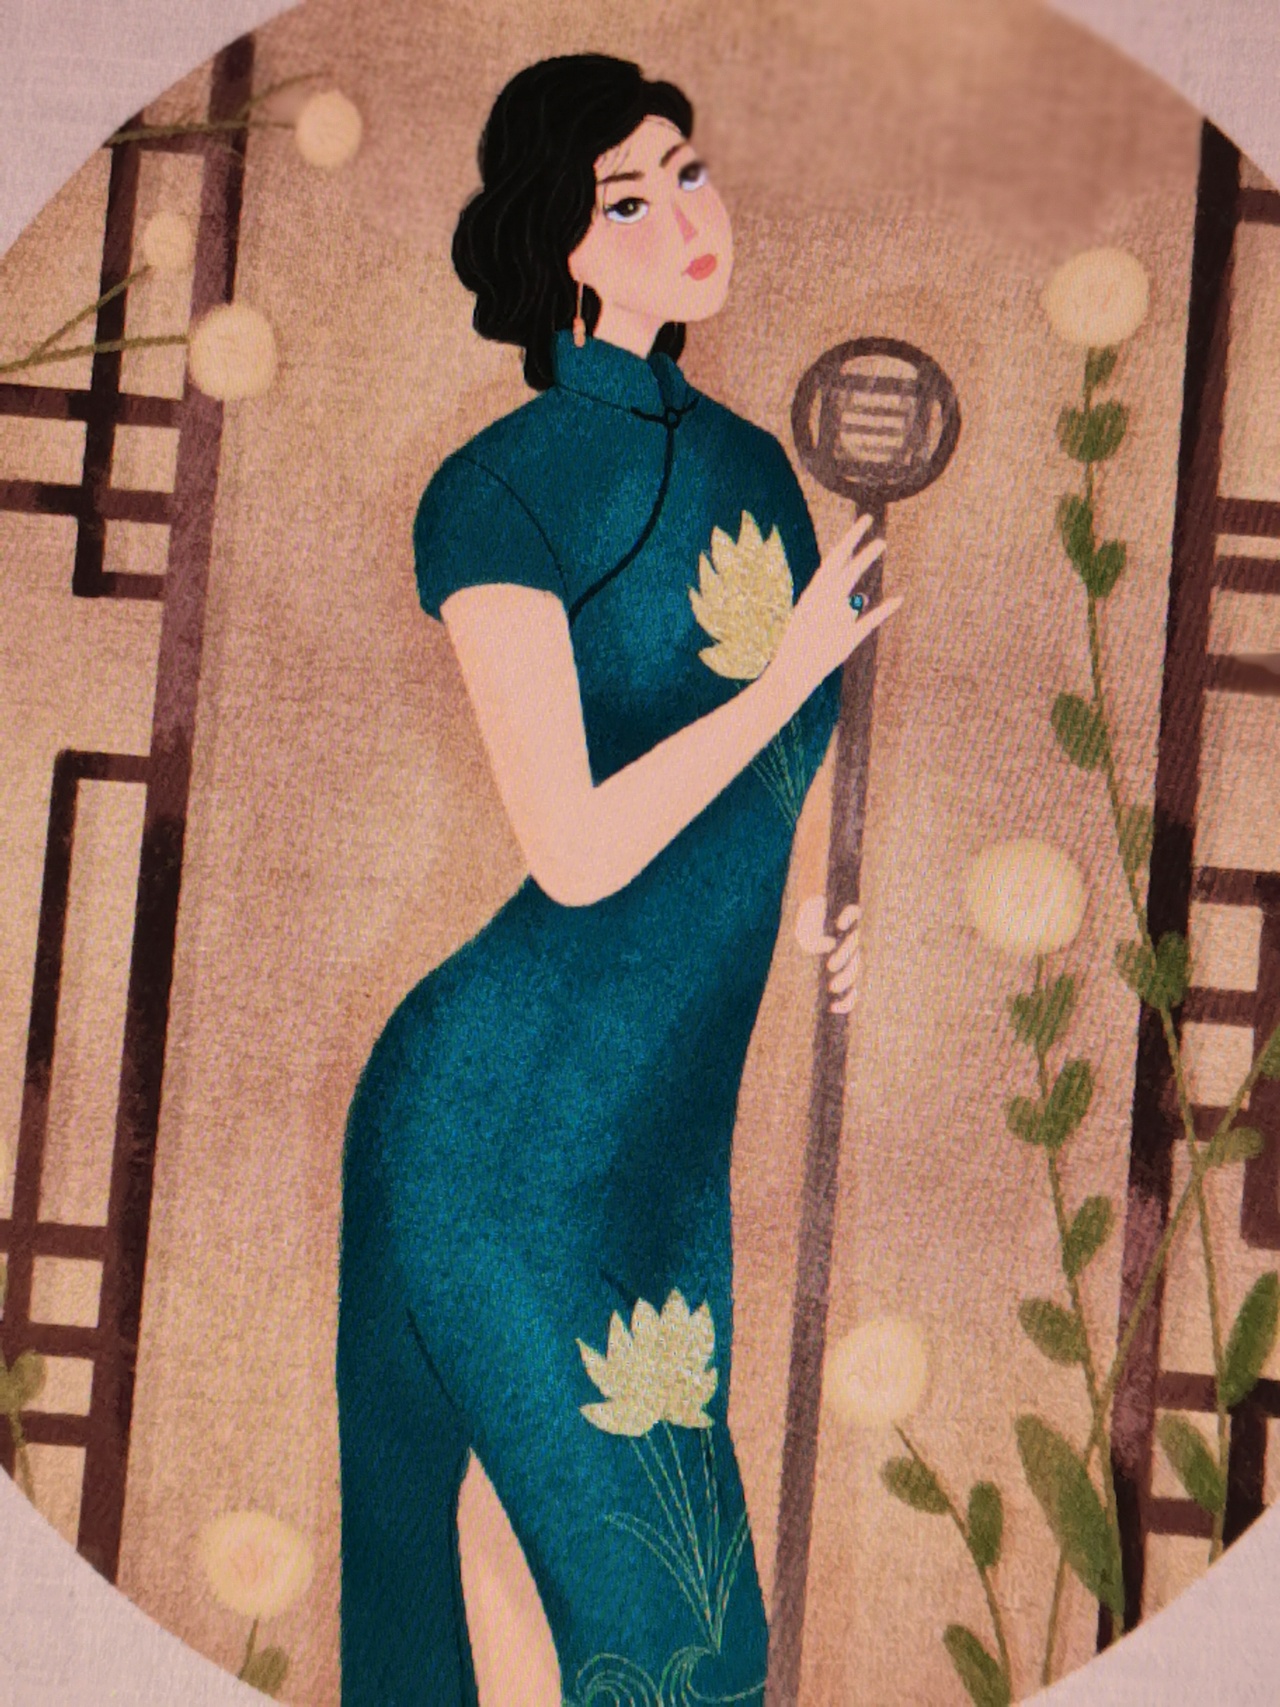 关于旗袍,最深的记忆是民国那些摇曳多姿的女子,老上海不曾迷失的风情